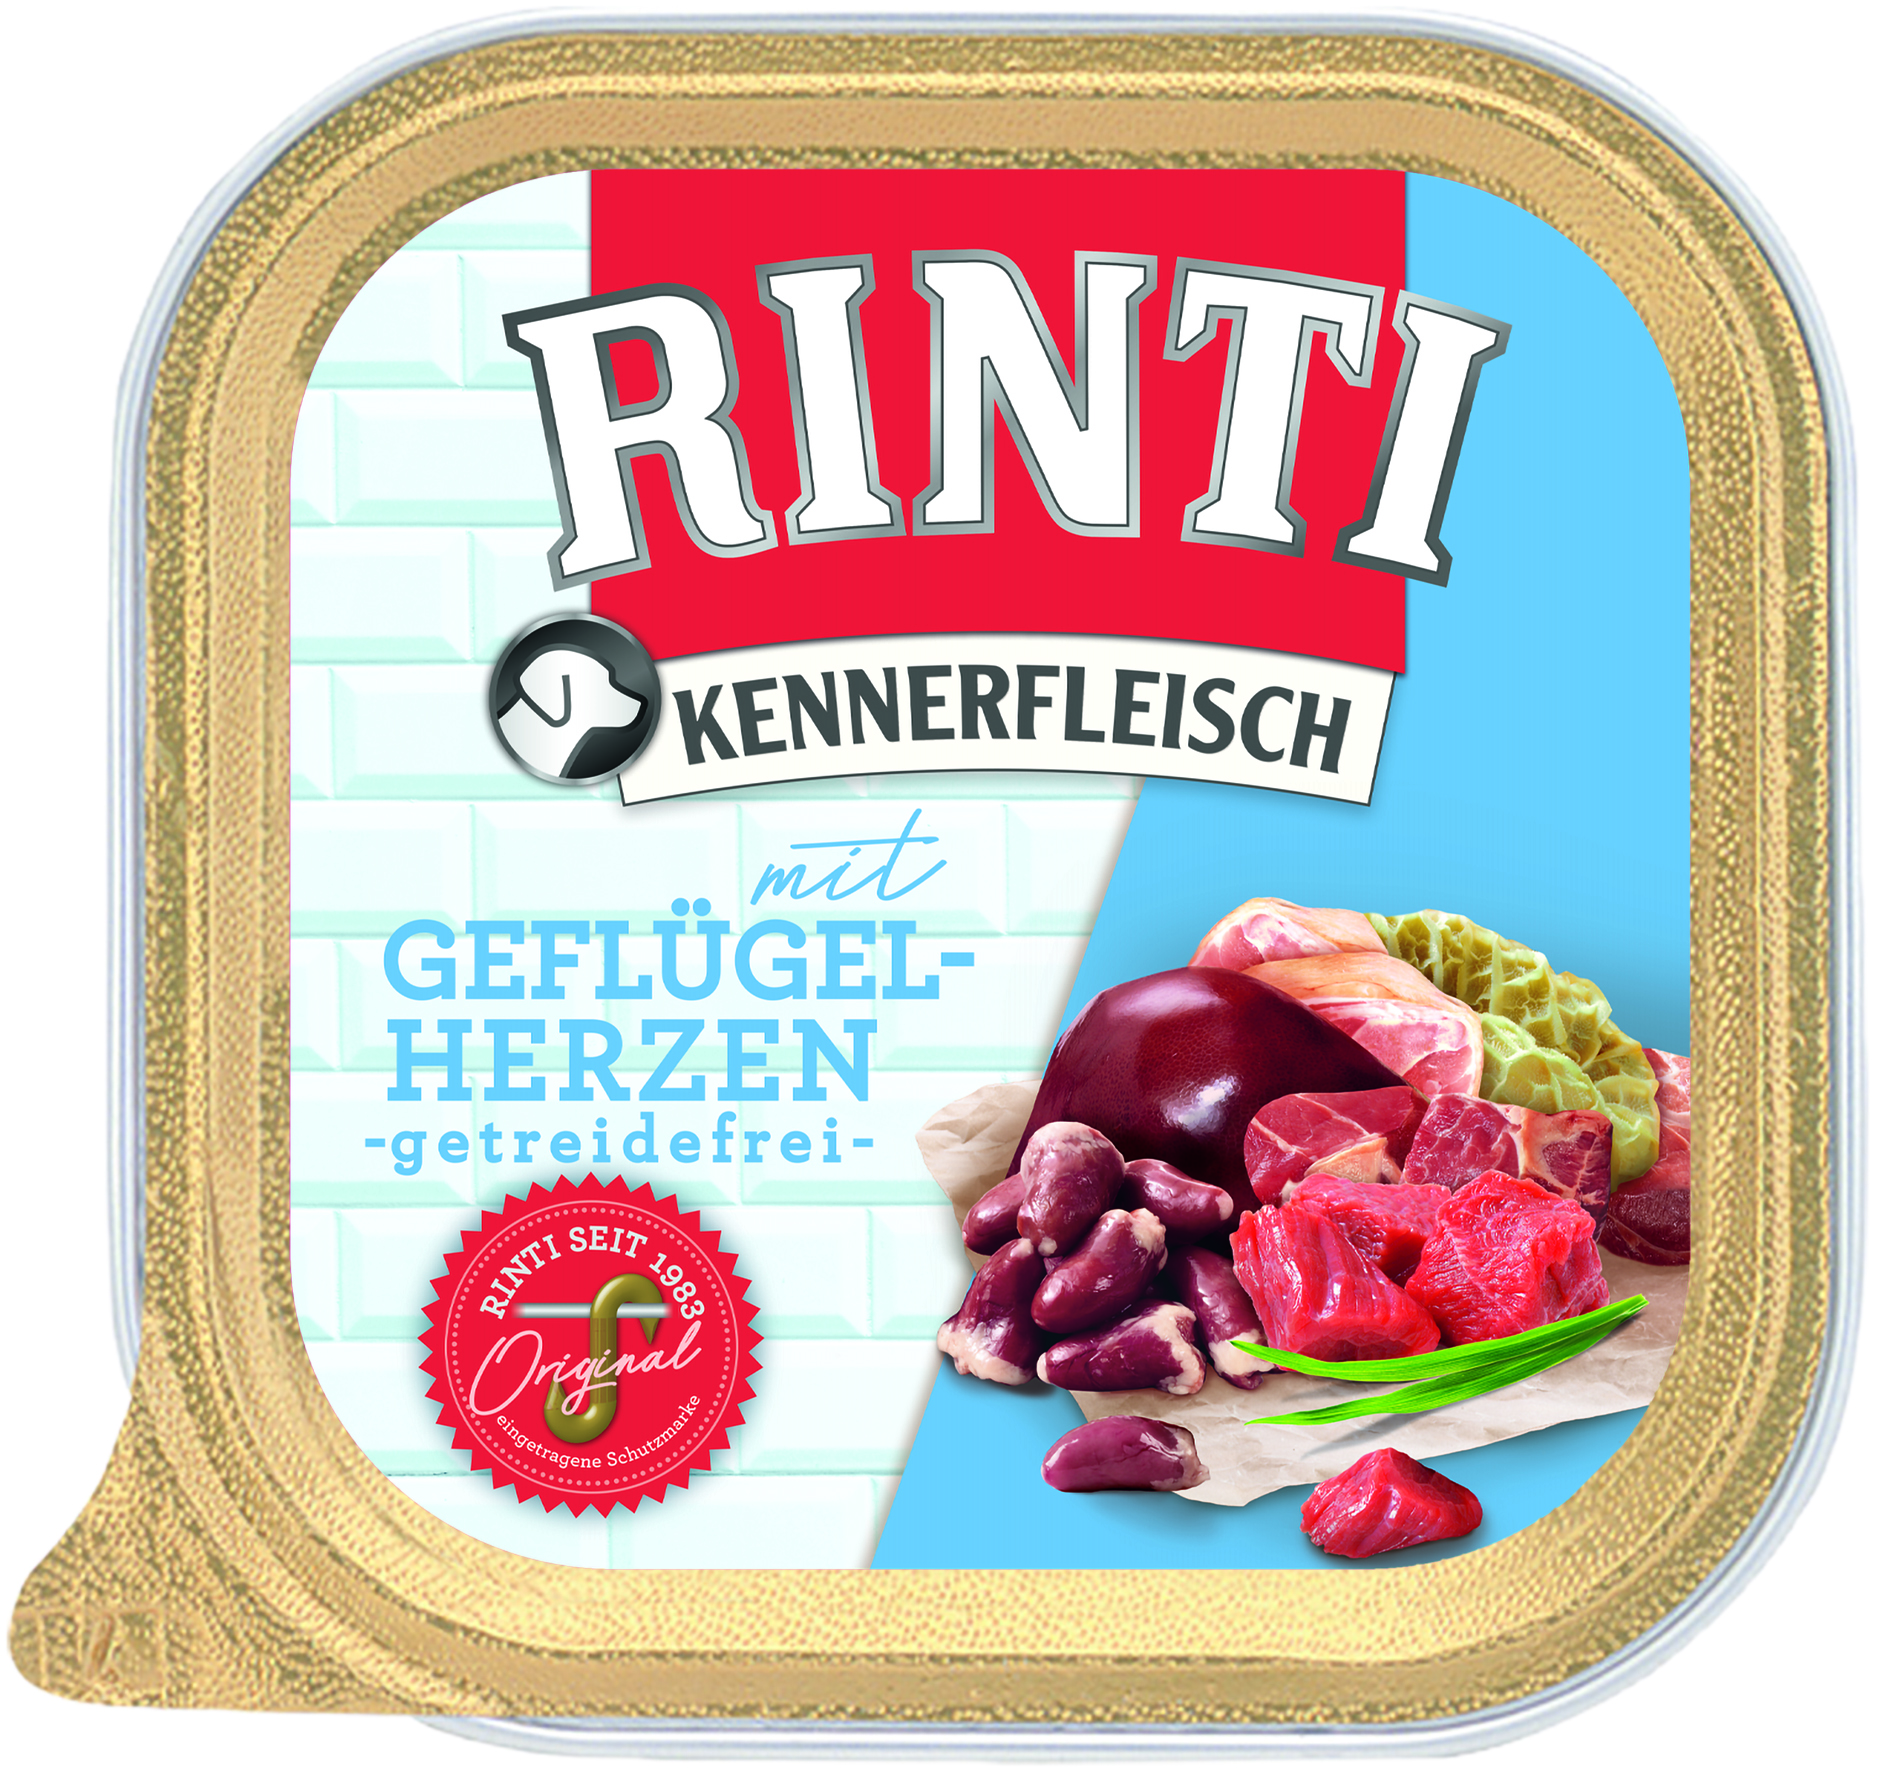 Rinti Kennerfleisch Plus Geflügelherzen 300g